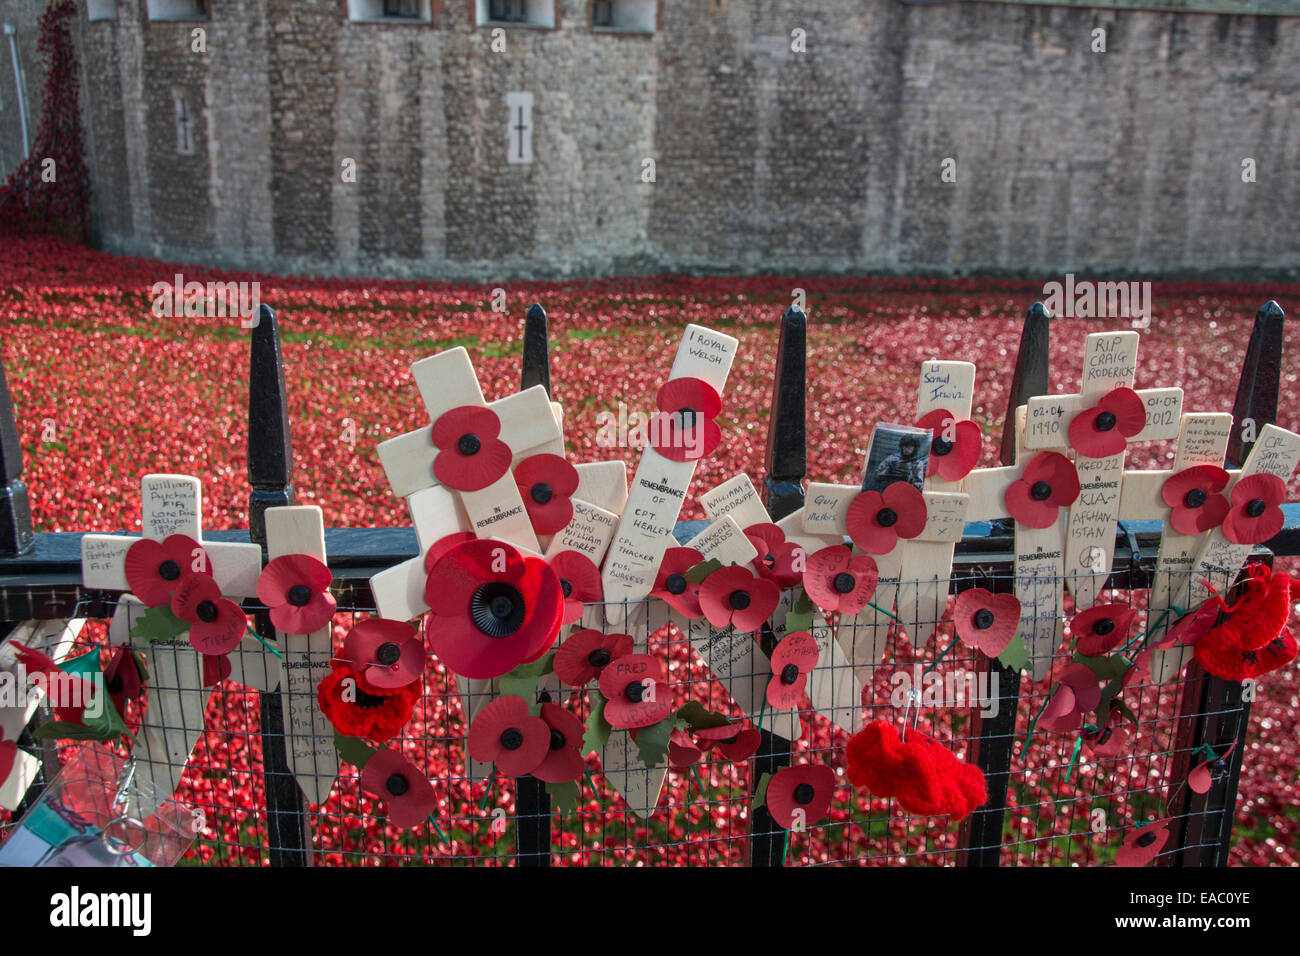 Hommages aux soldats tués à la guerre. Tour de Londres, Angleterre. Novembre 2014 Banque D'Images